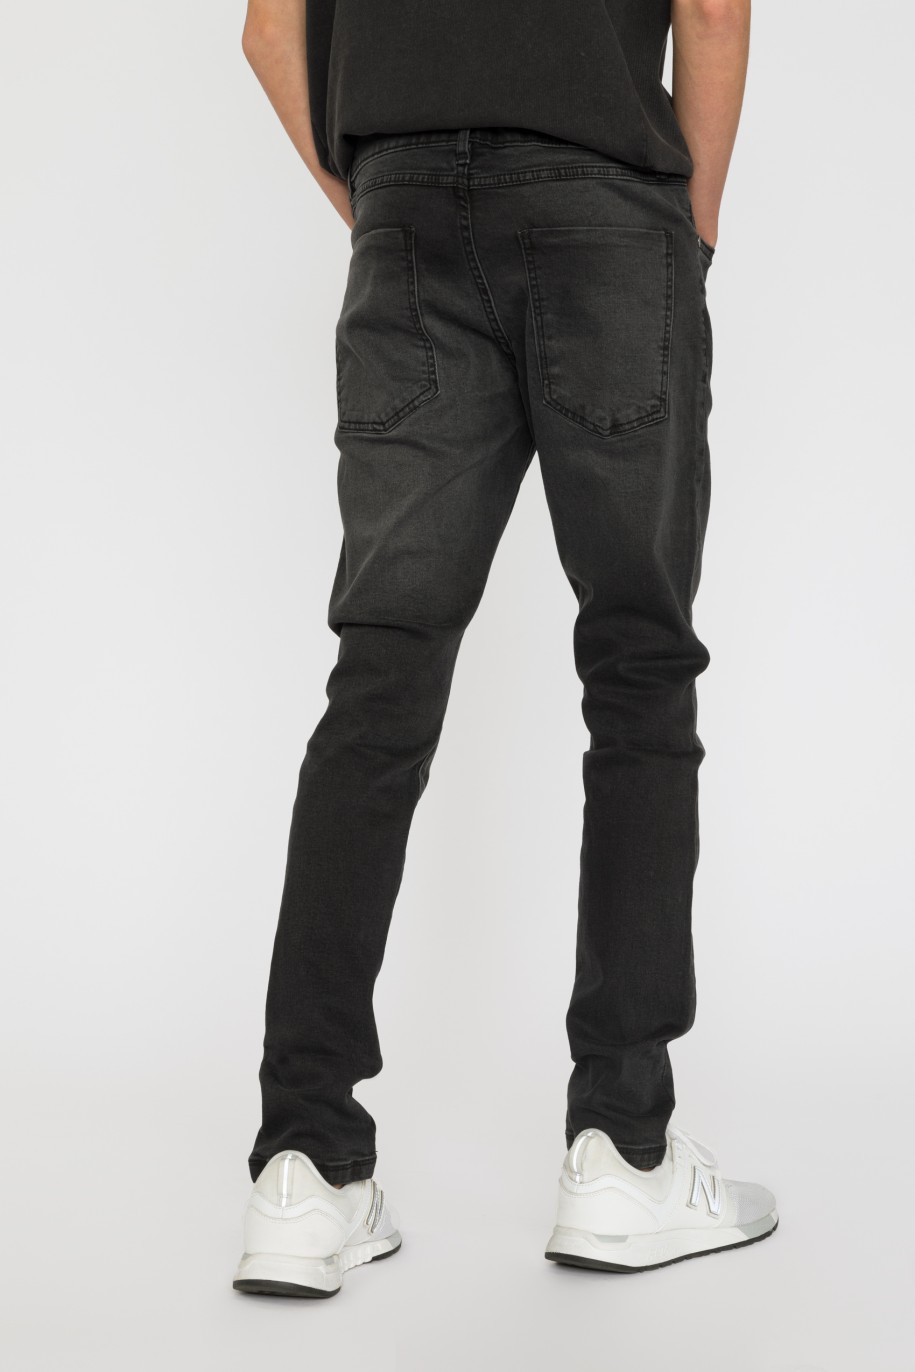 Czarne proste jeansowe spodnie dla chłopaka - 33448